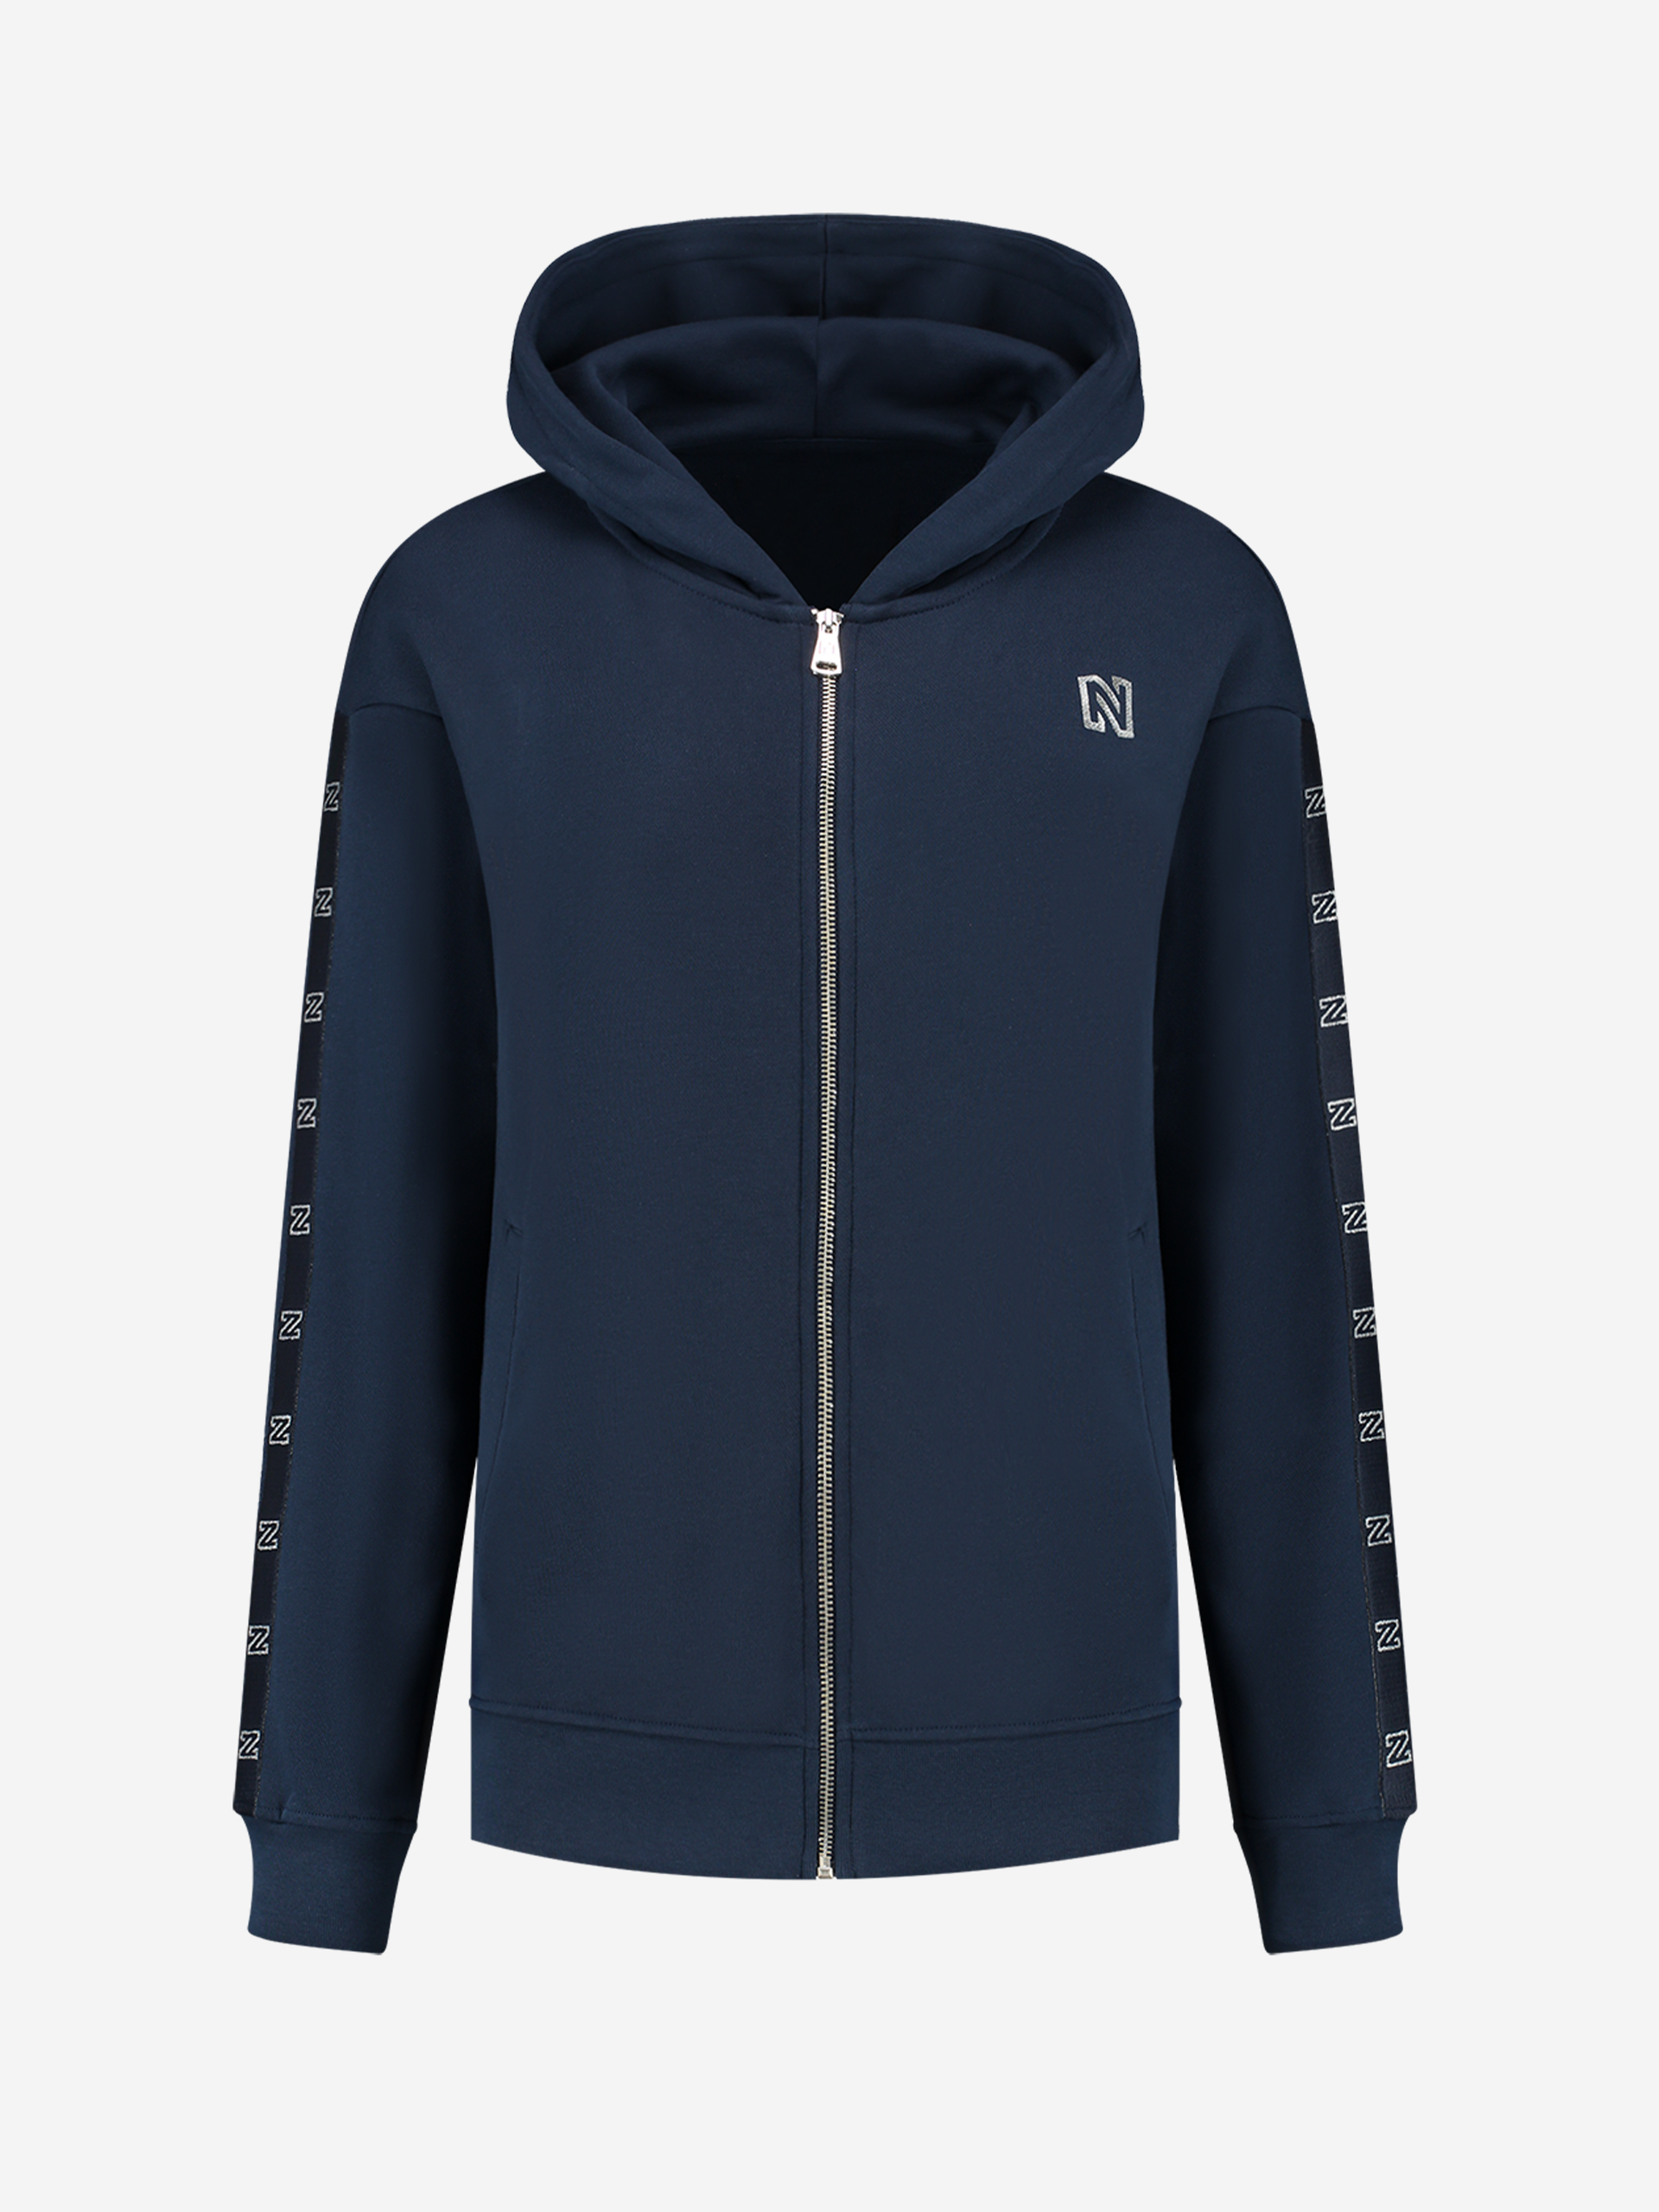 Zip hoodie with foil N logo 